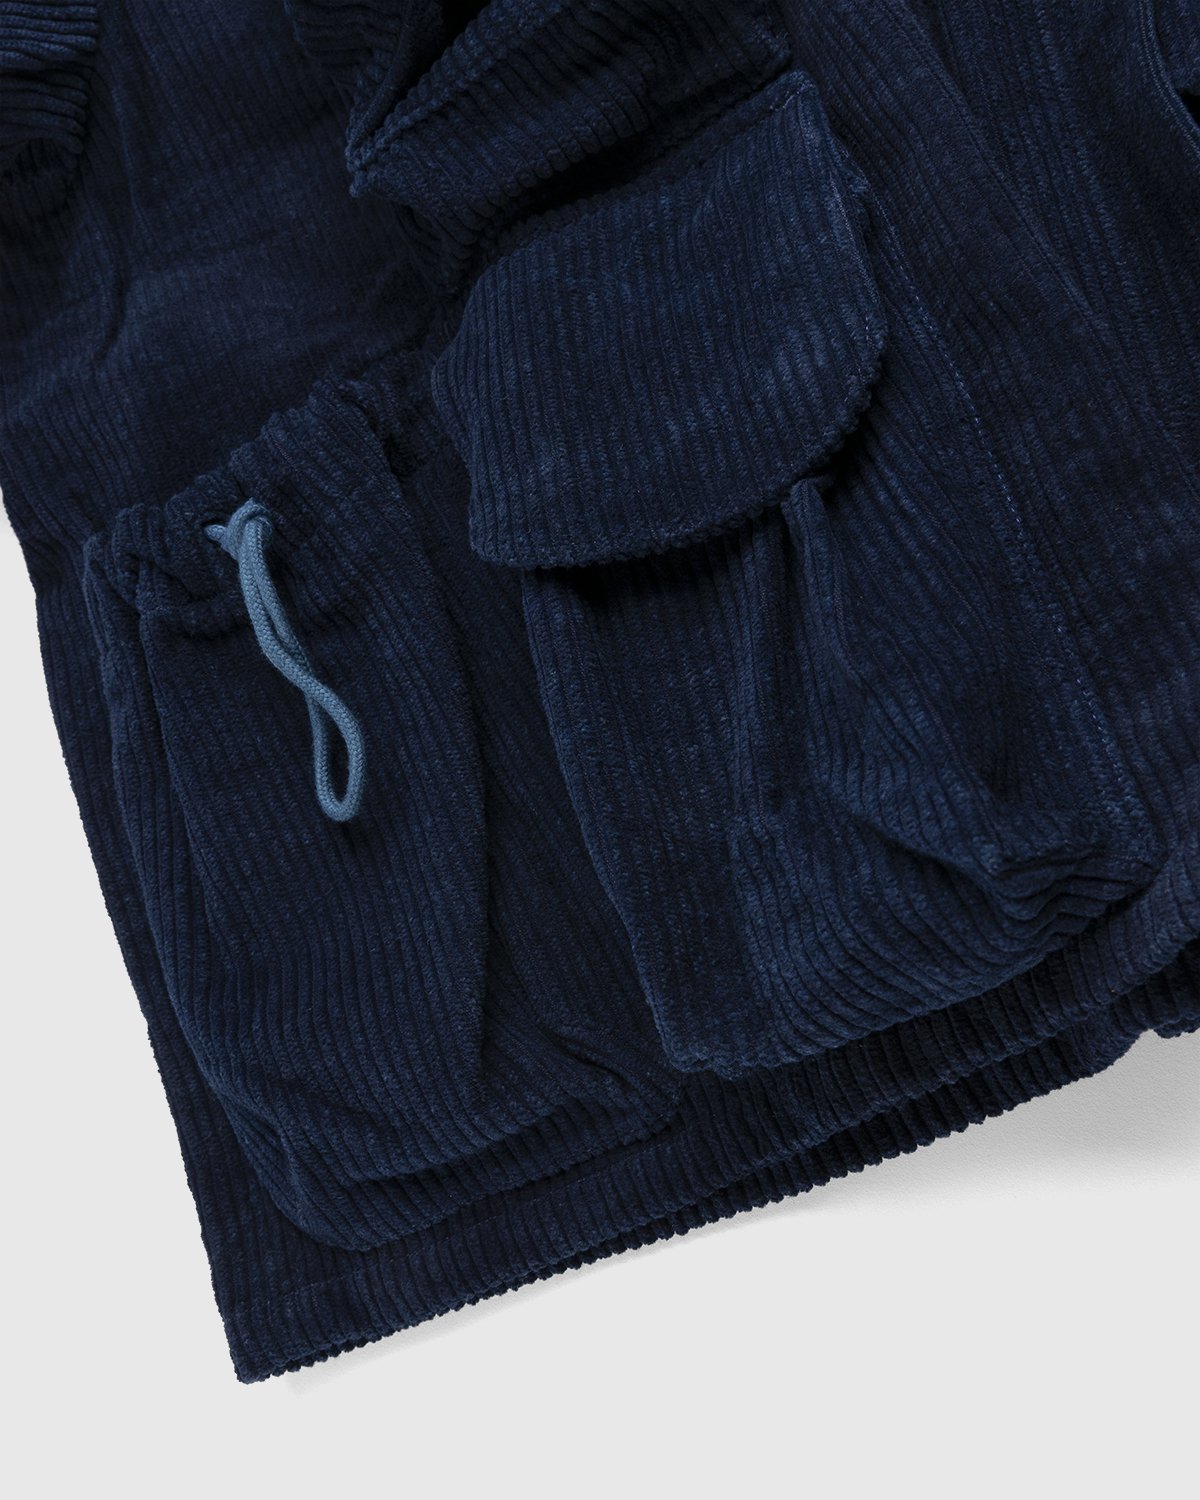 Story mfg. - Rambler Jacket Deep Indigo Corduroy - Clothing - Blue - Image 4